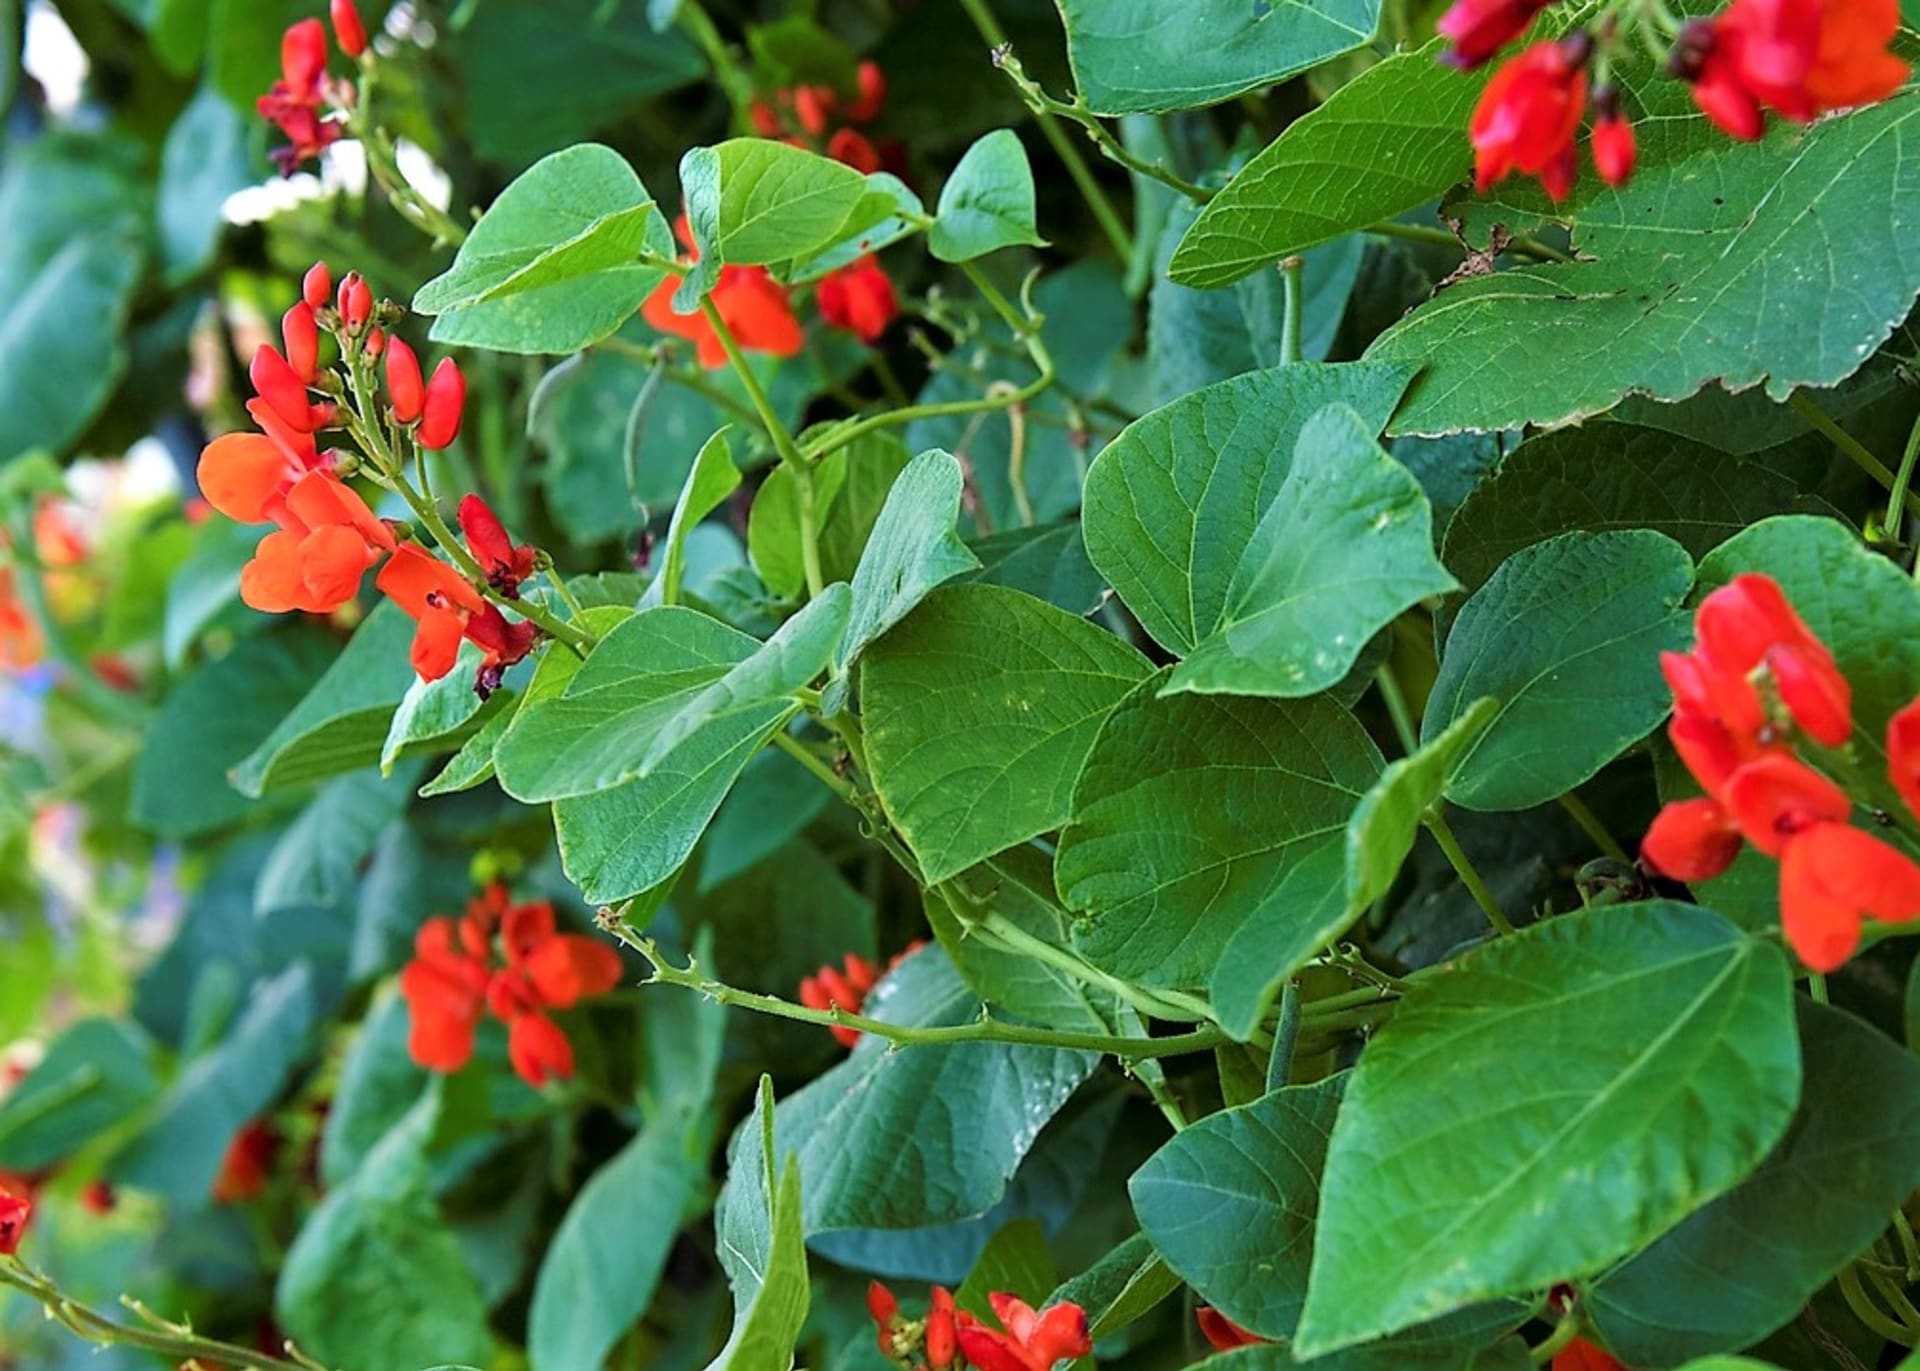 Fazol šarlatový (Phaseolus coccineus) je jeden z mnoha druhů rodu fazol (Phaseolus)